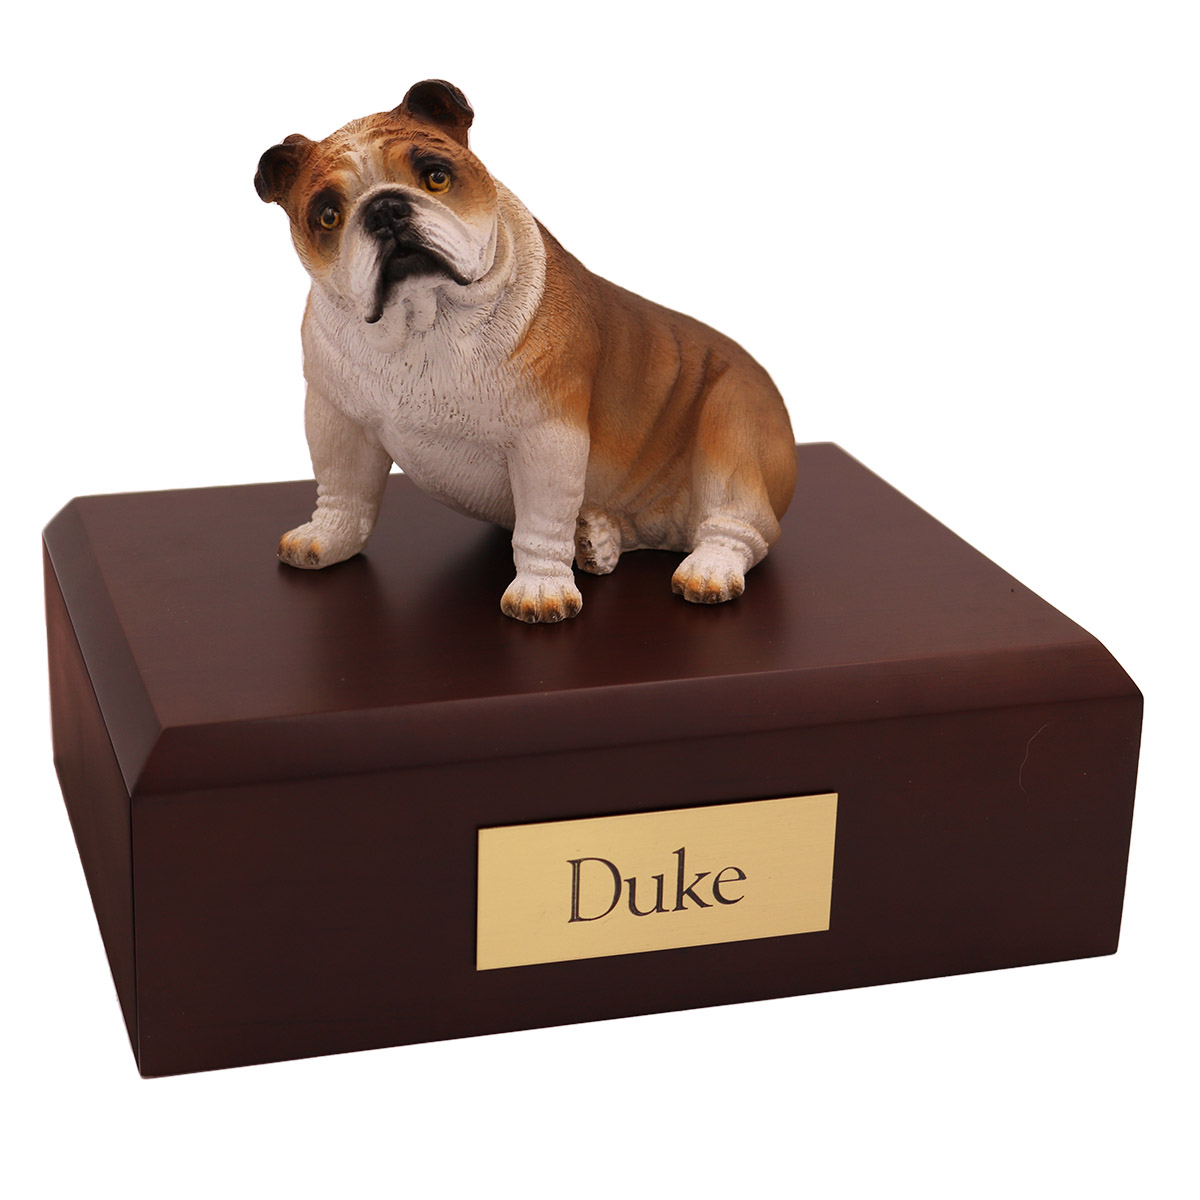 Dog, Bulldog, Fawn - Figurine Urn